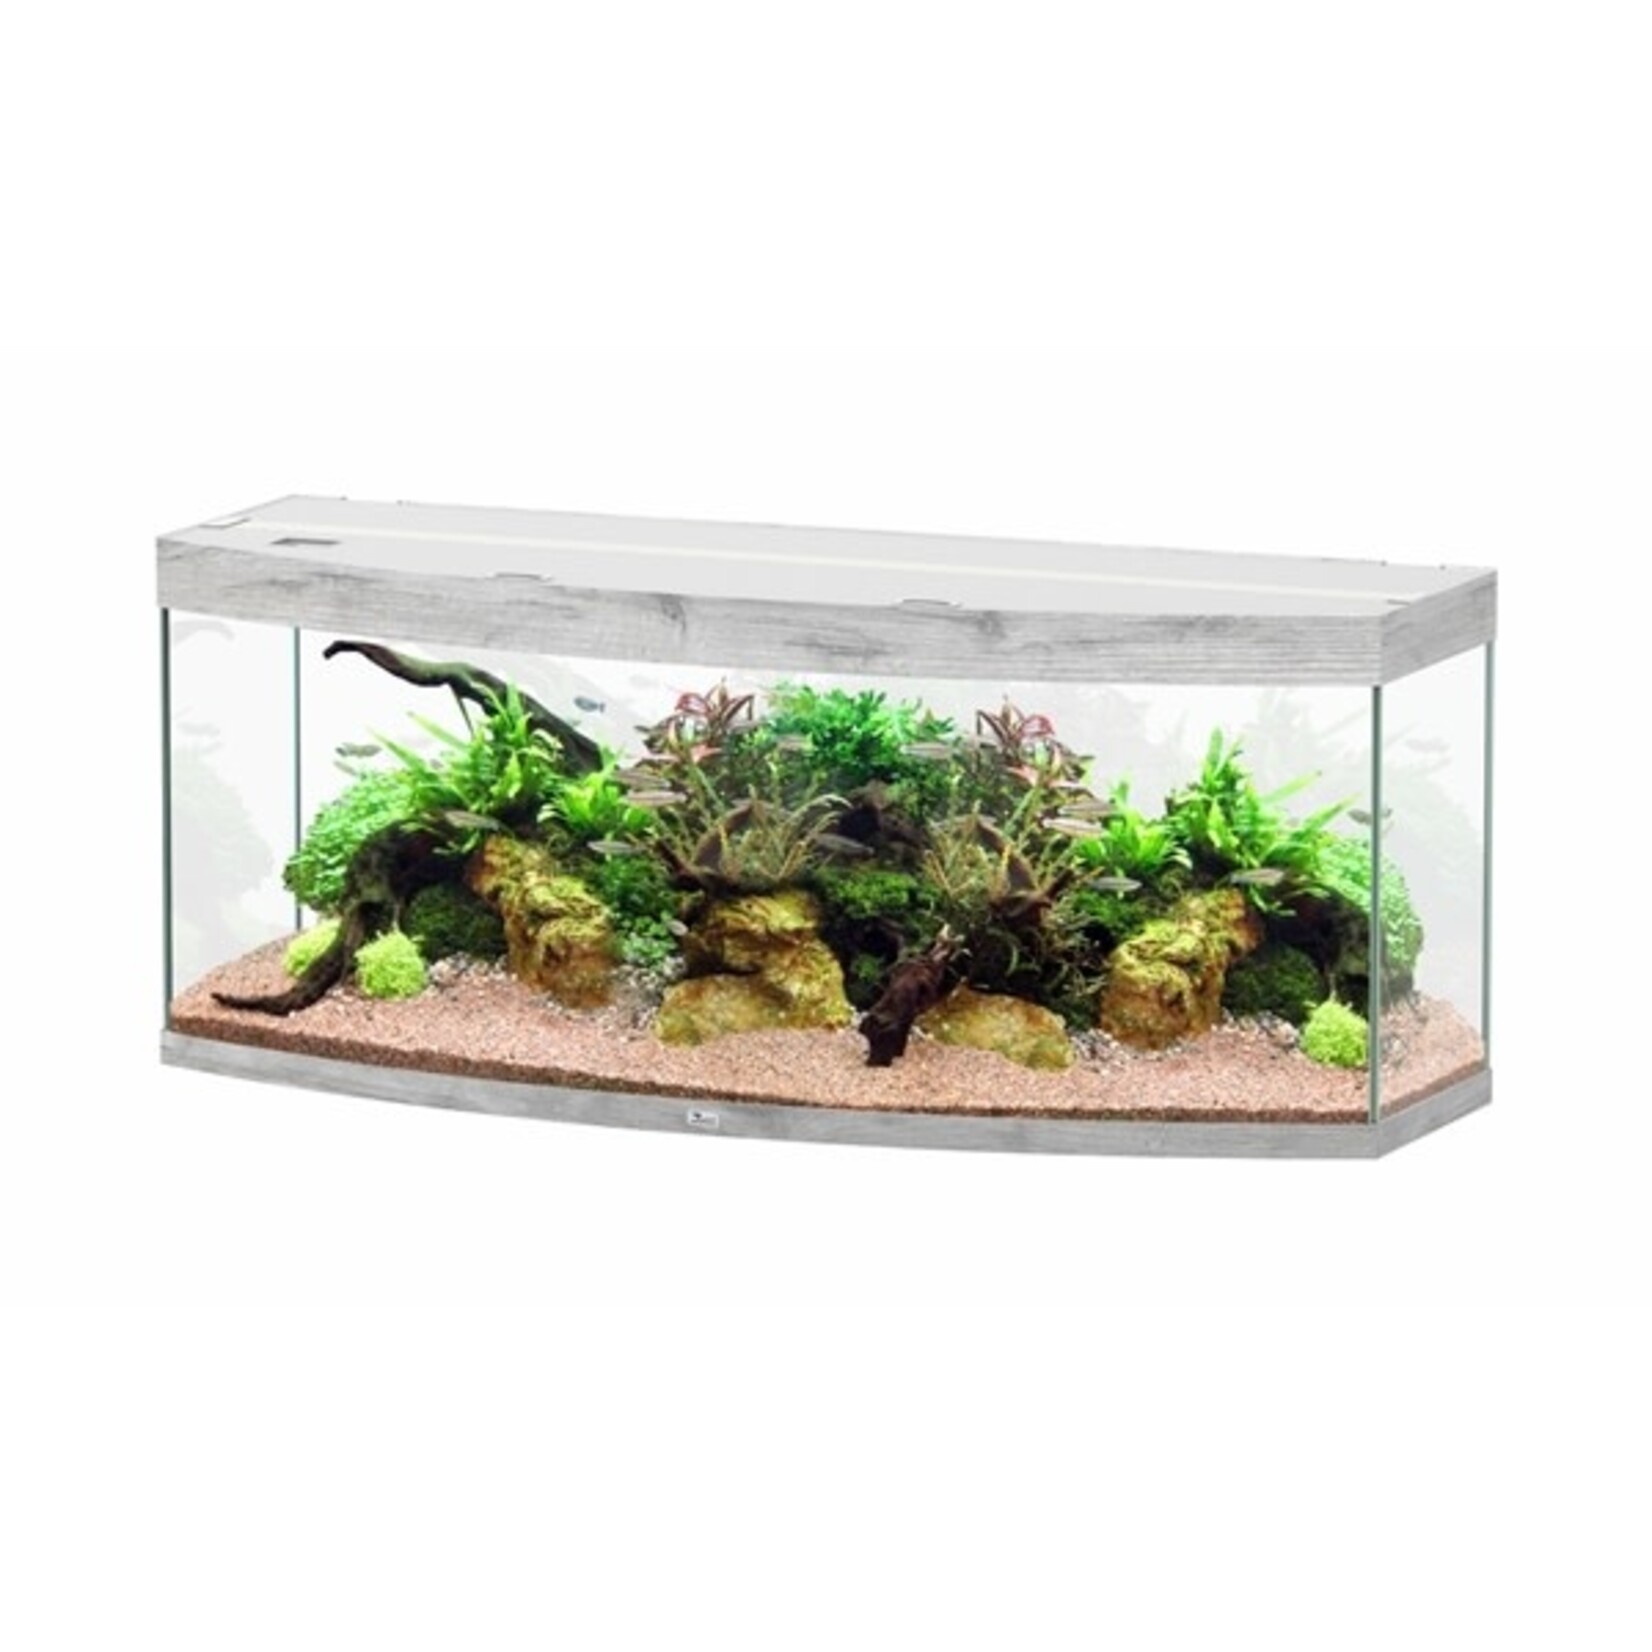 Aquatlantis Aquarium sublime horizon 150 cm whitewash-088